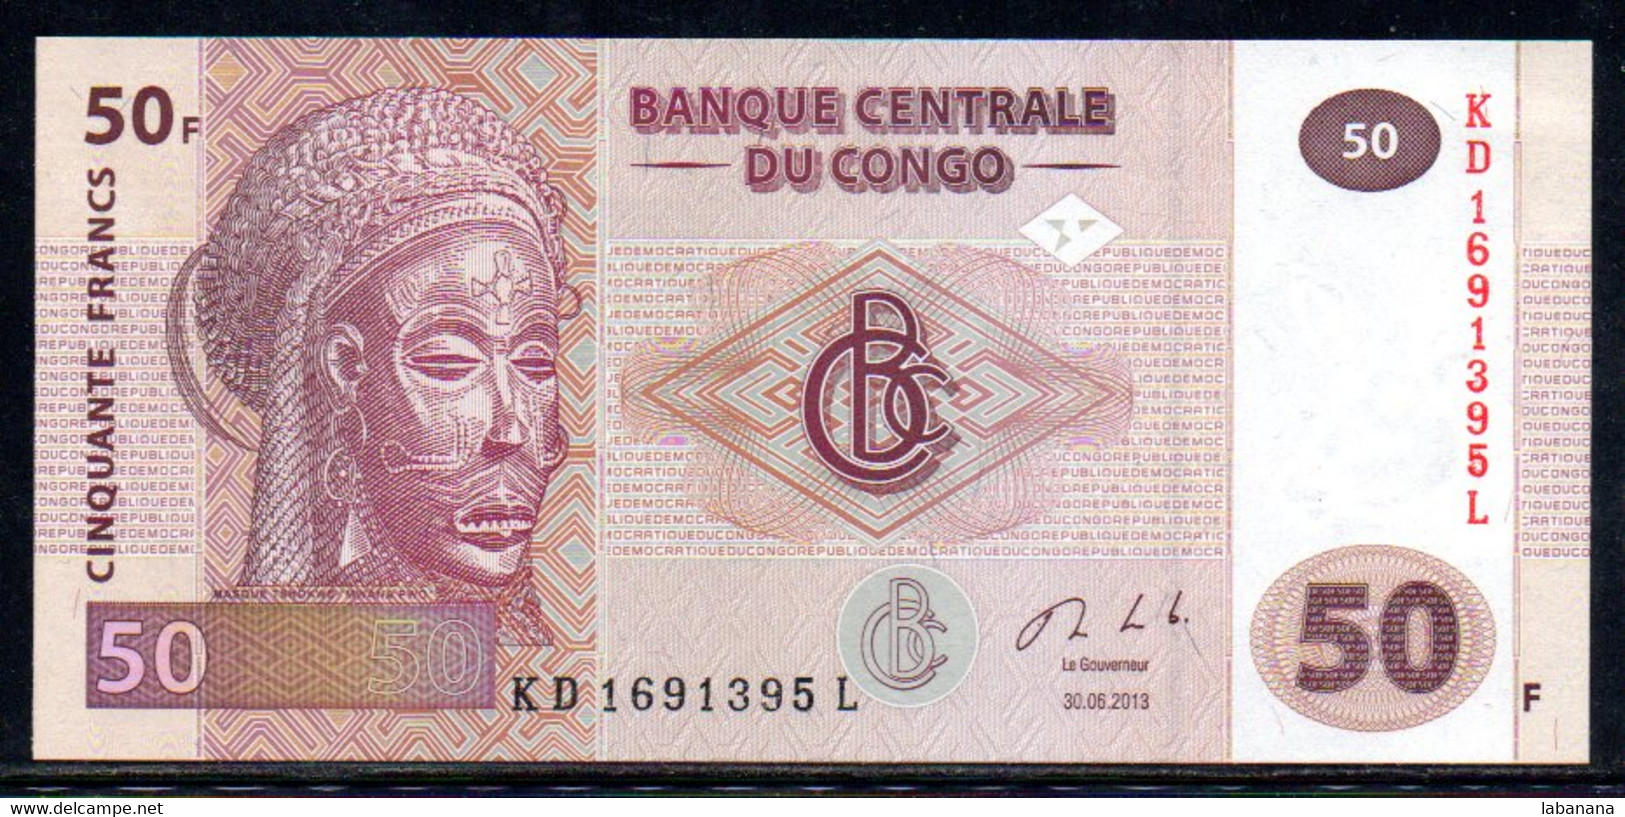 Congo 50fr 2013 KD169L Neuf - República Democrática Del Congo & Zaire